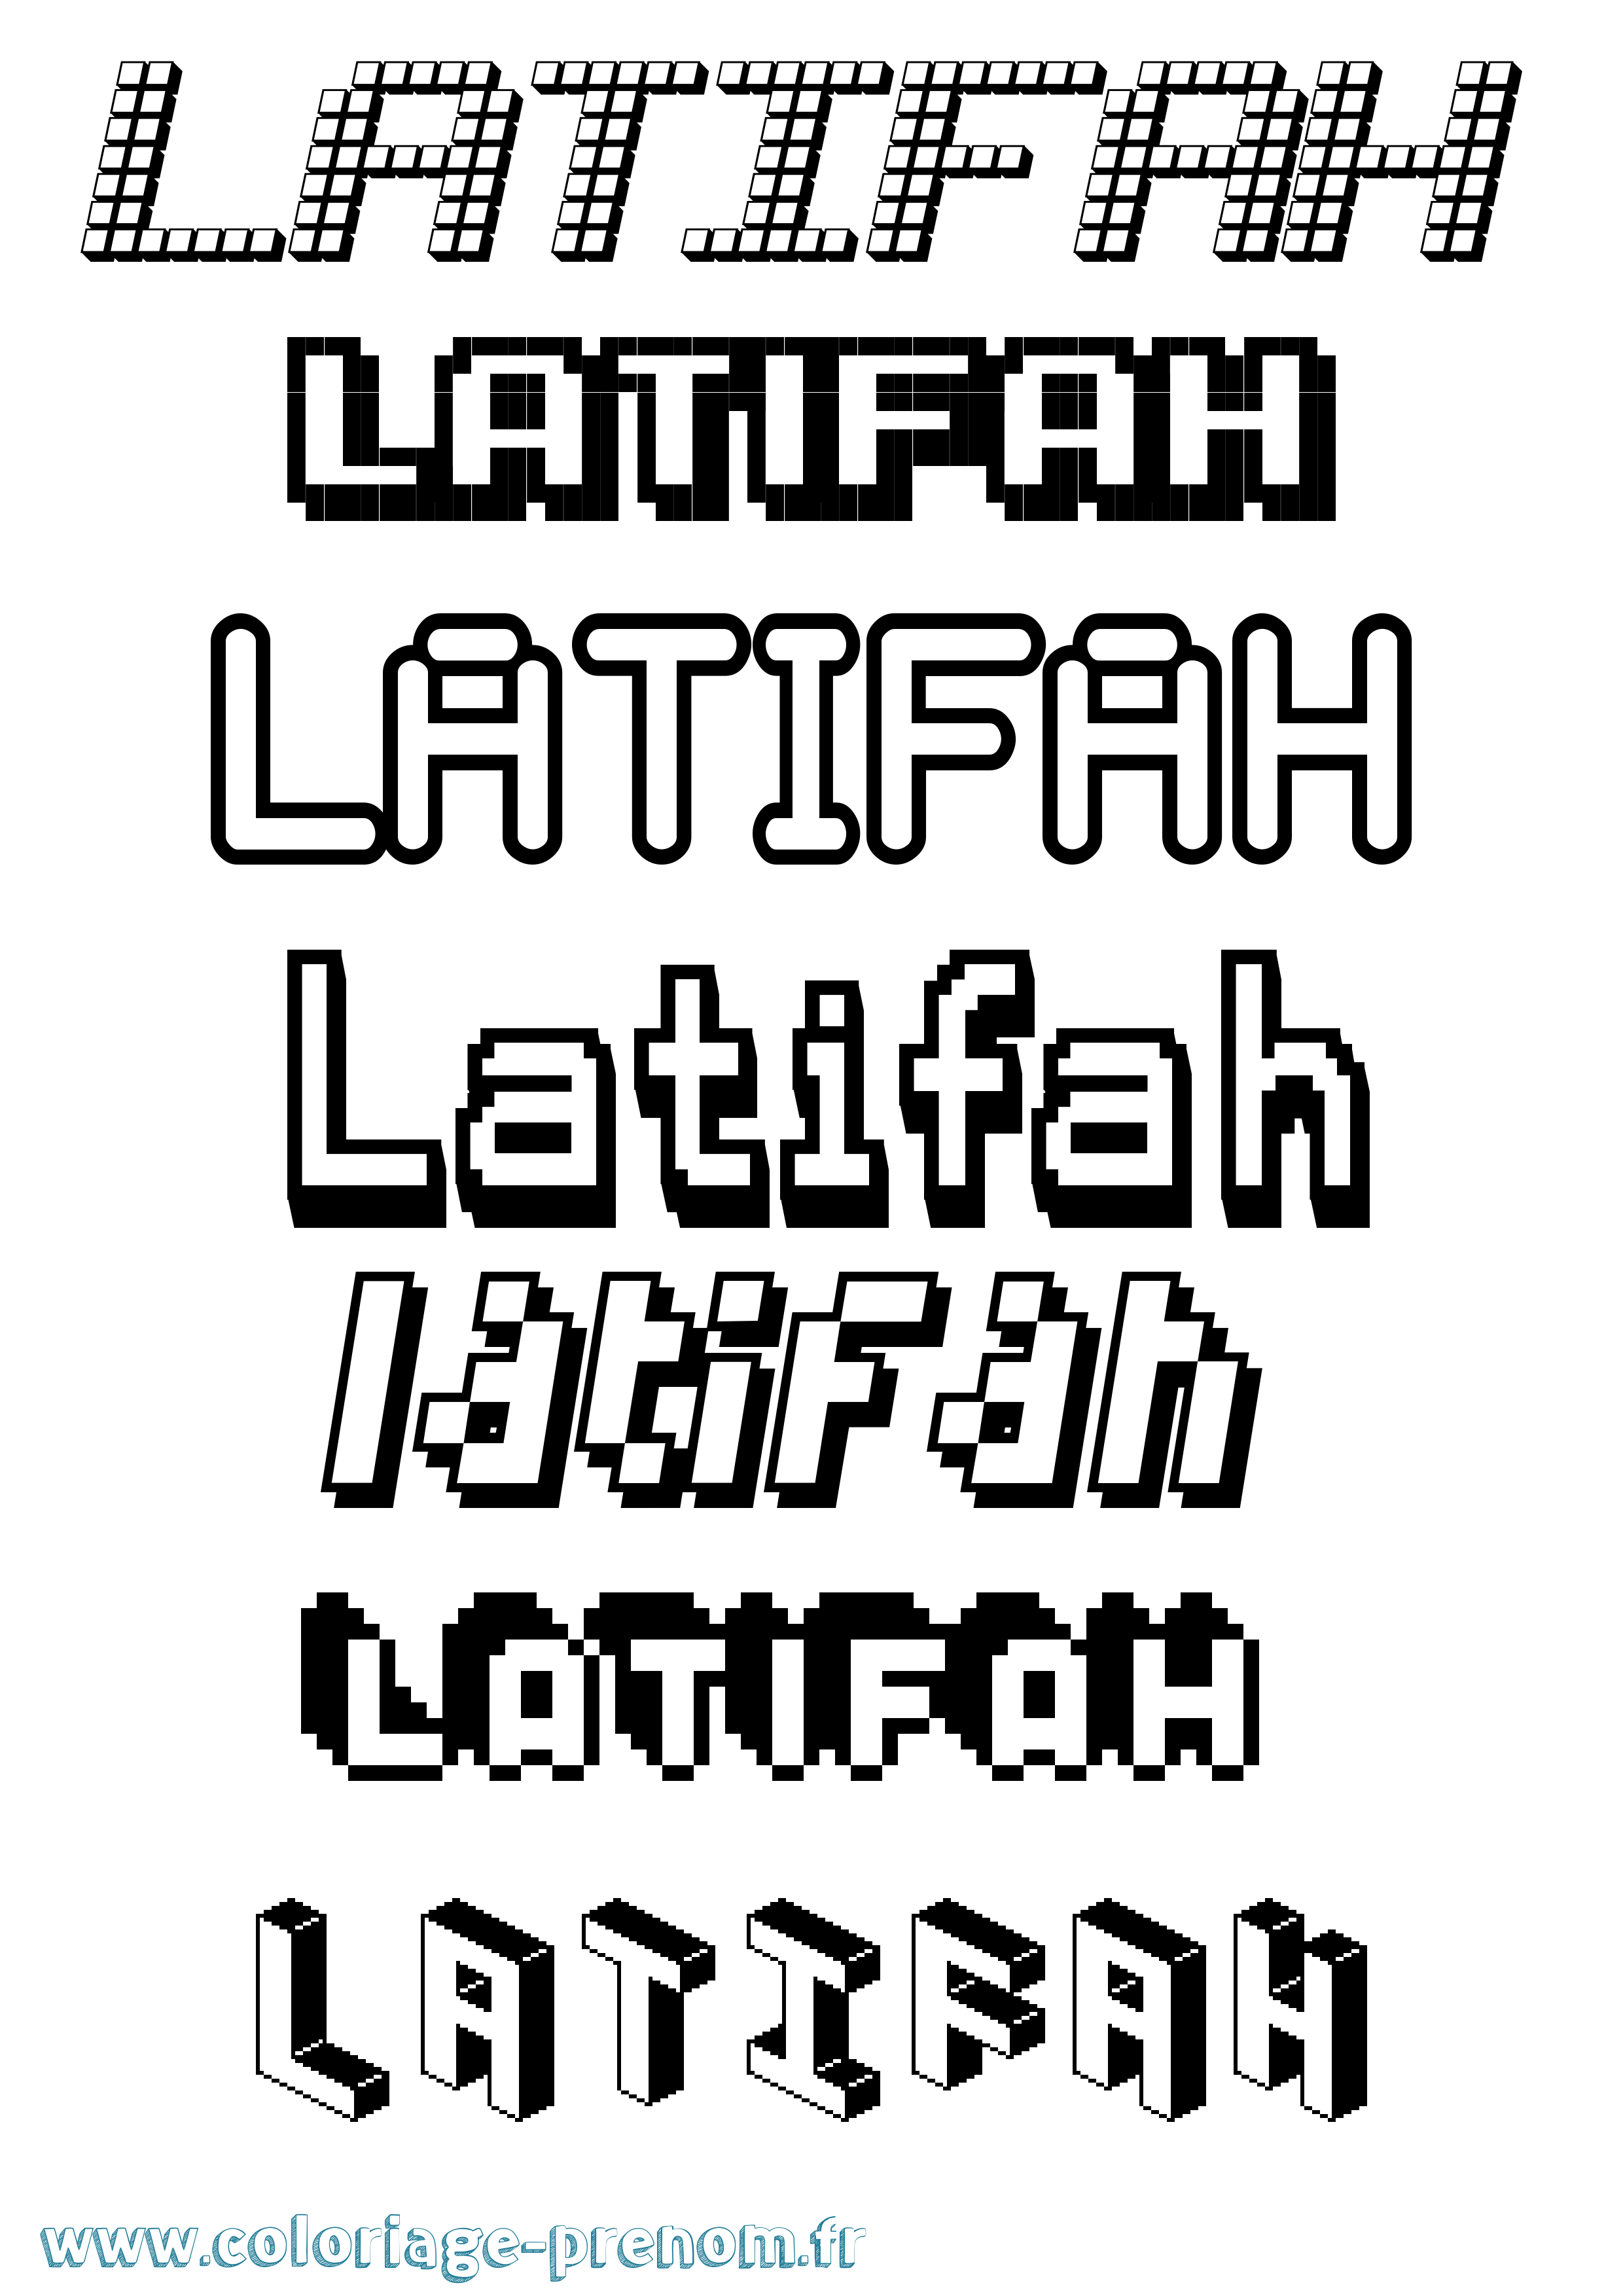 Coloriage prénom Latifah Pixel